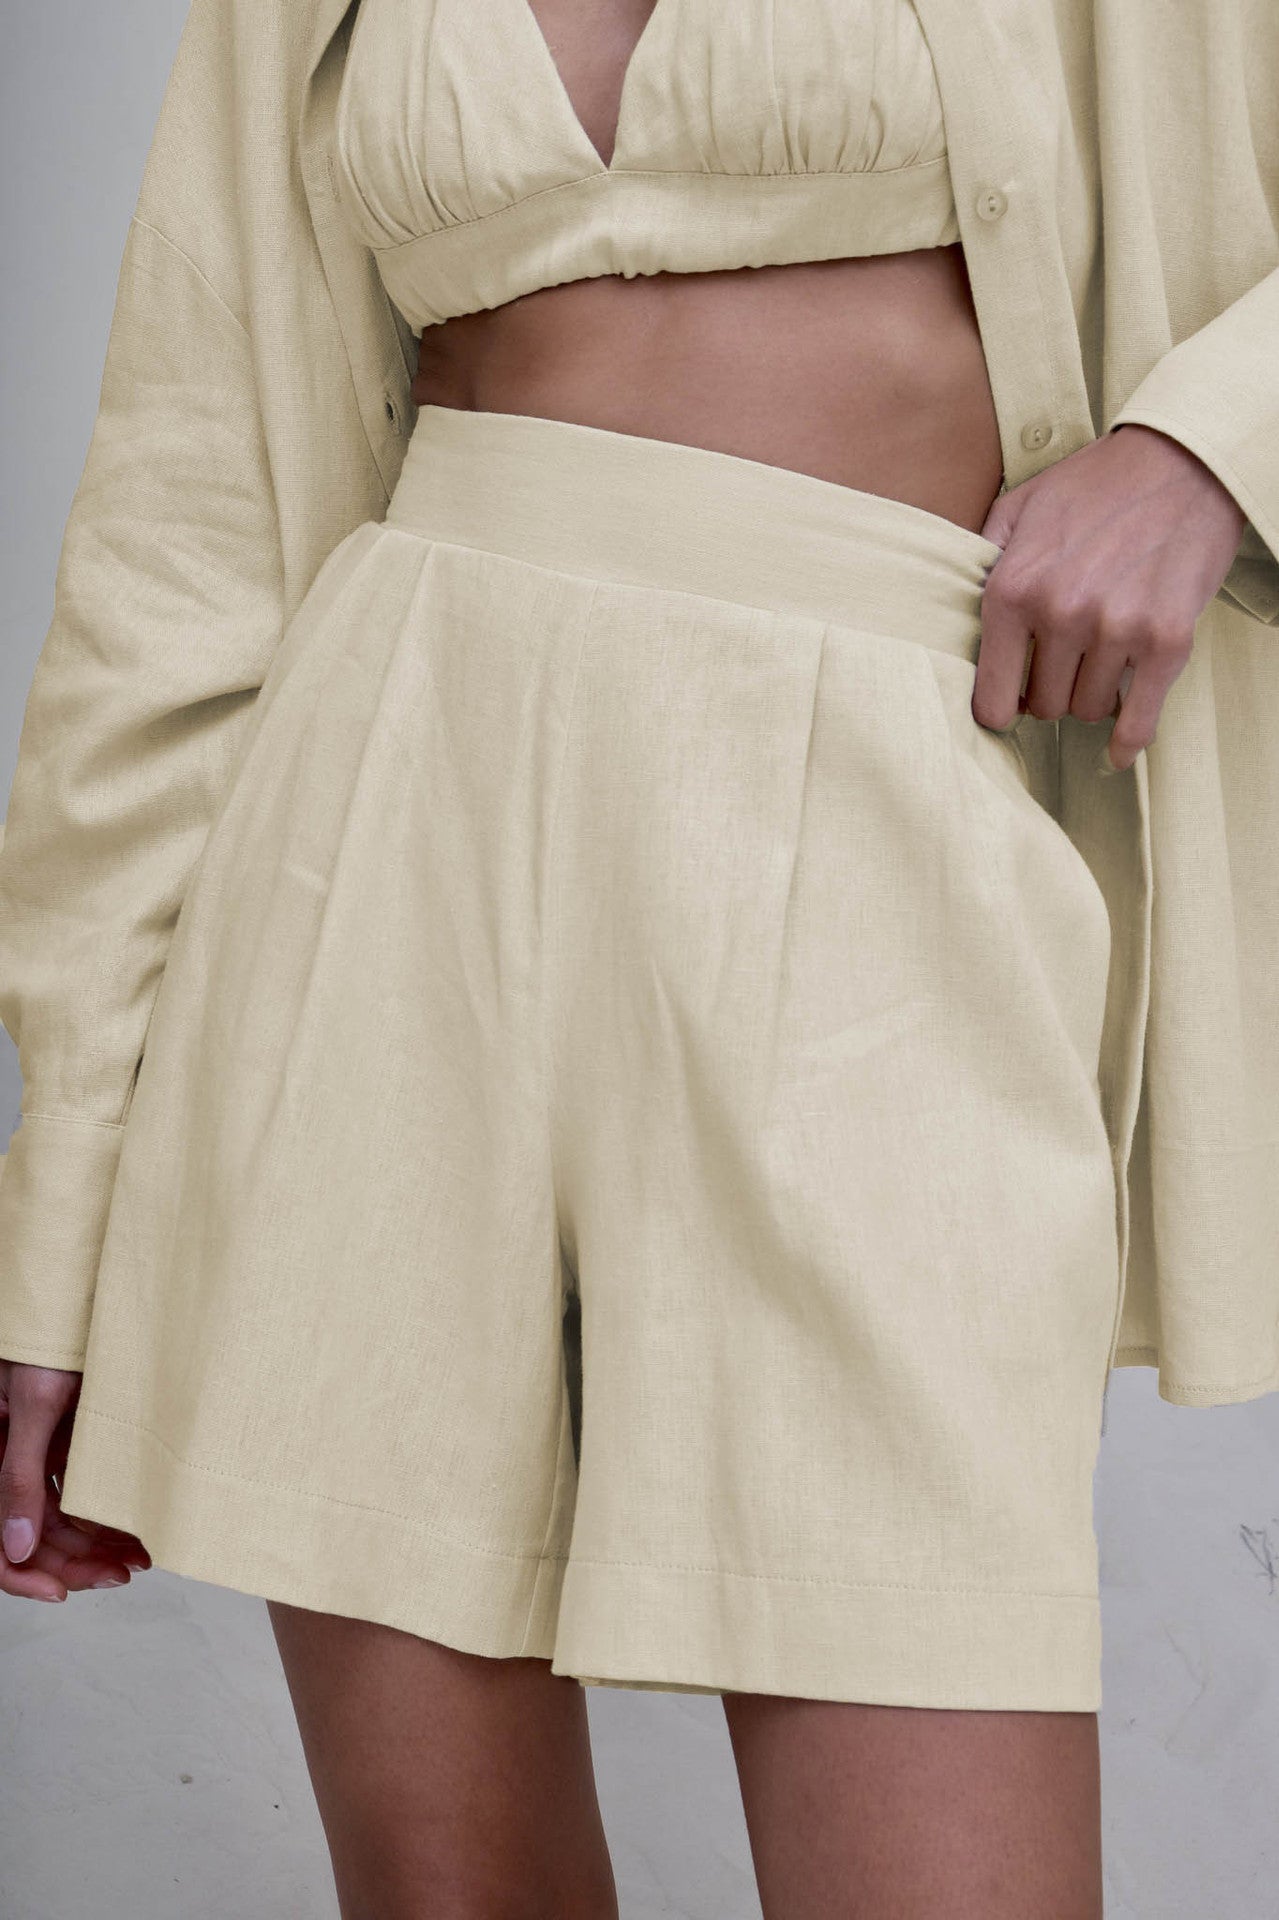 NTG Fad SUIT apricot shorts / S cotton linen vest shirt four piece set